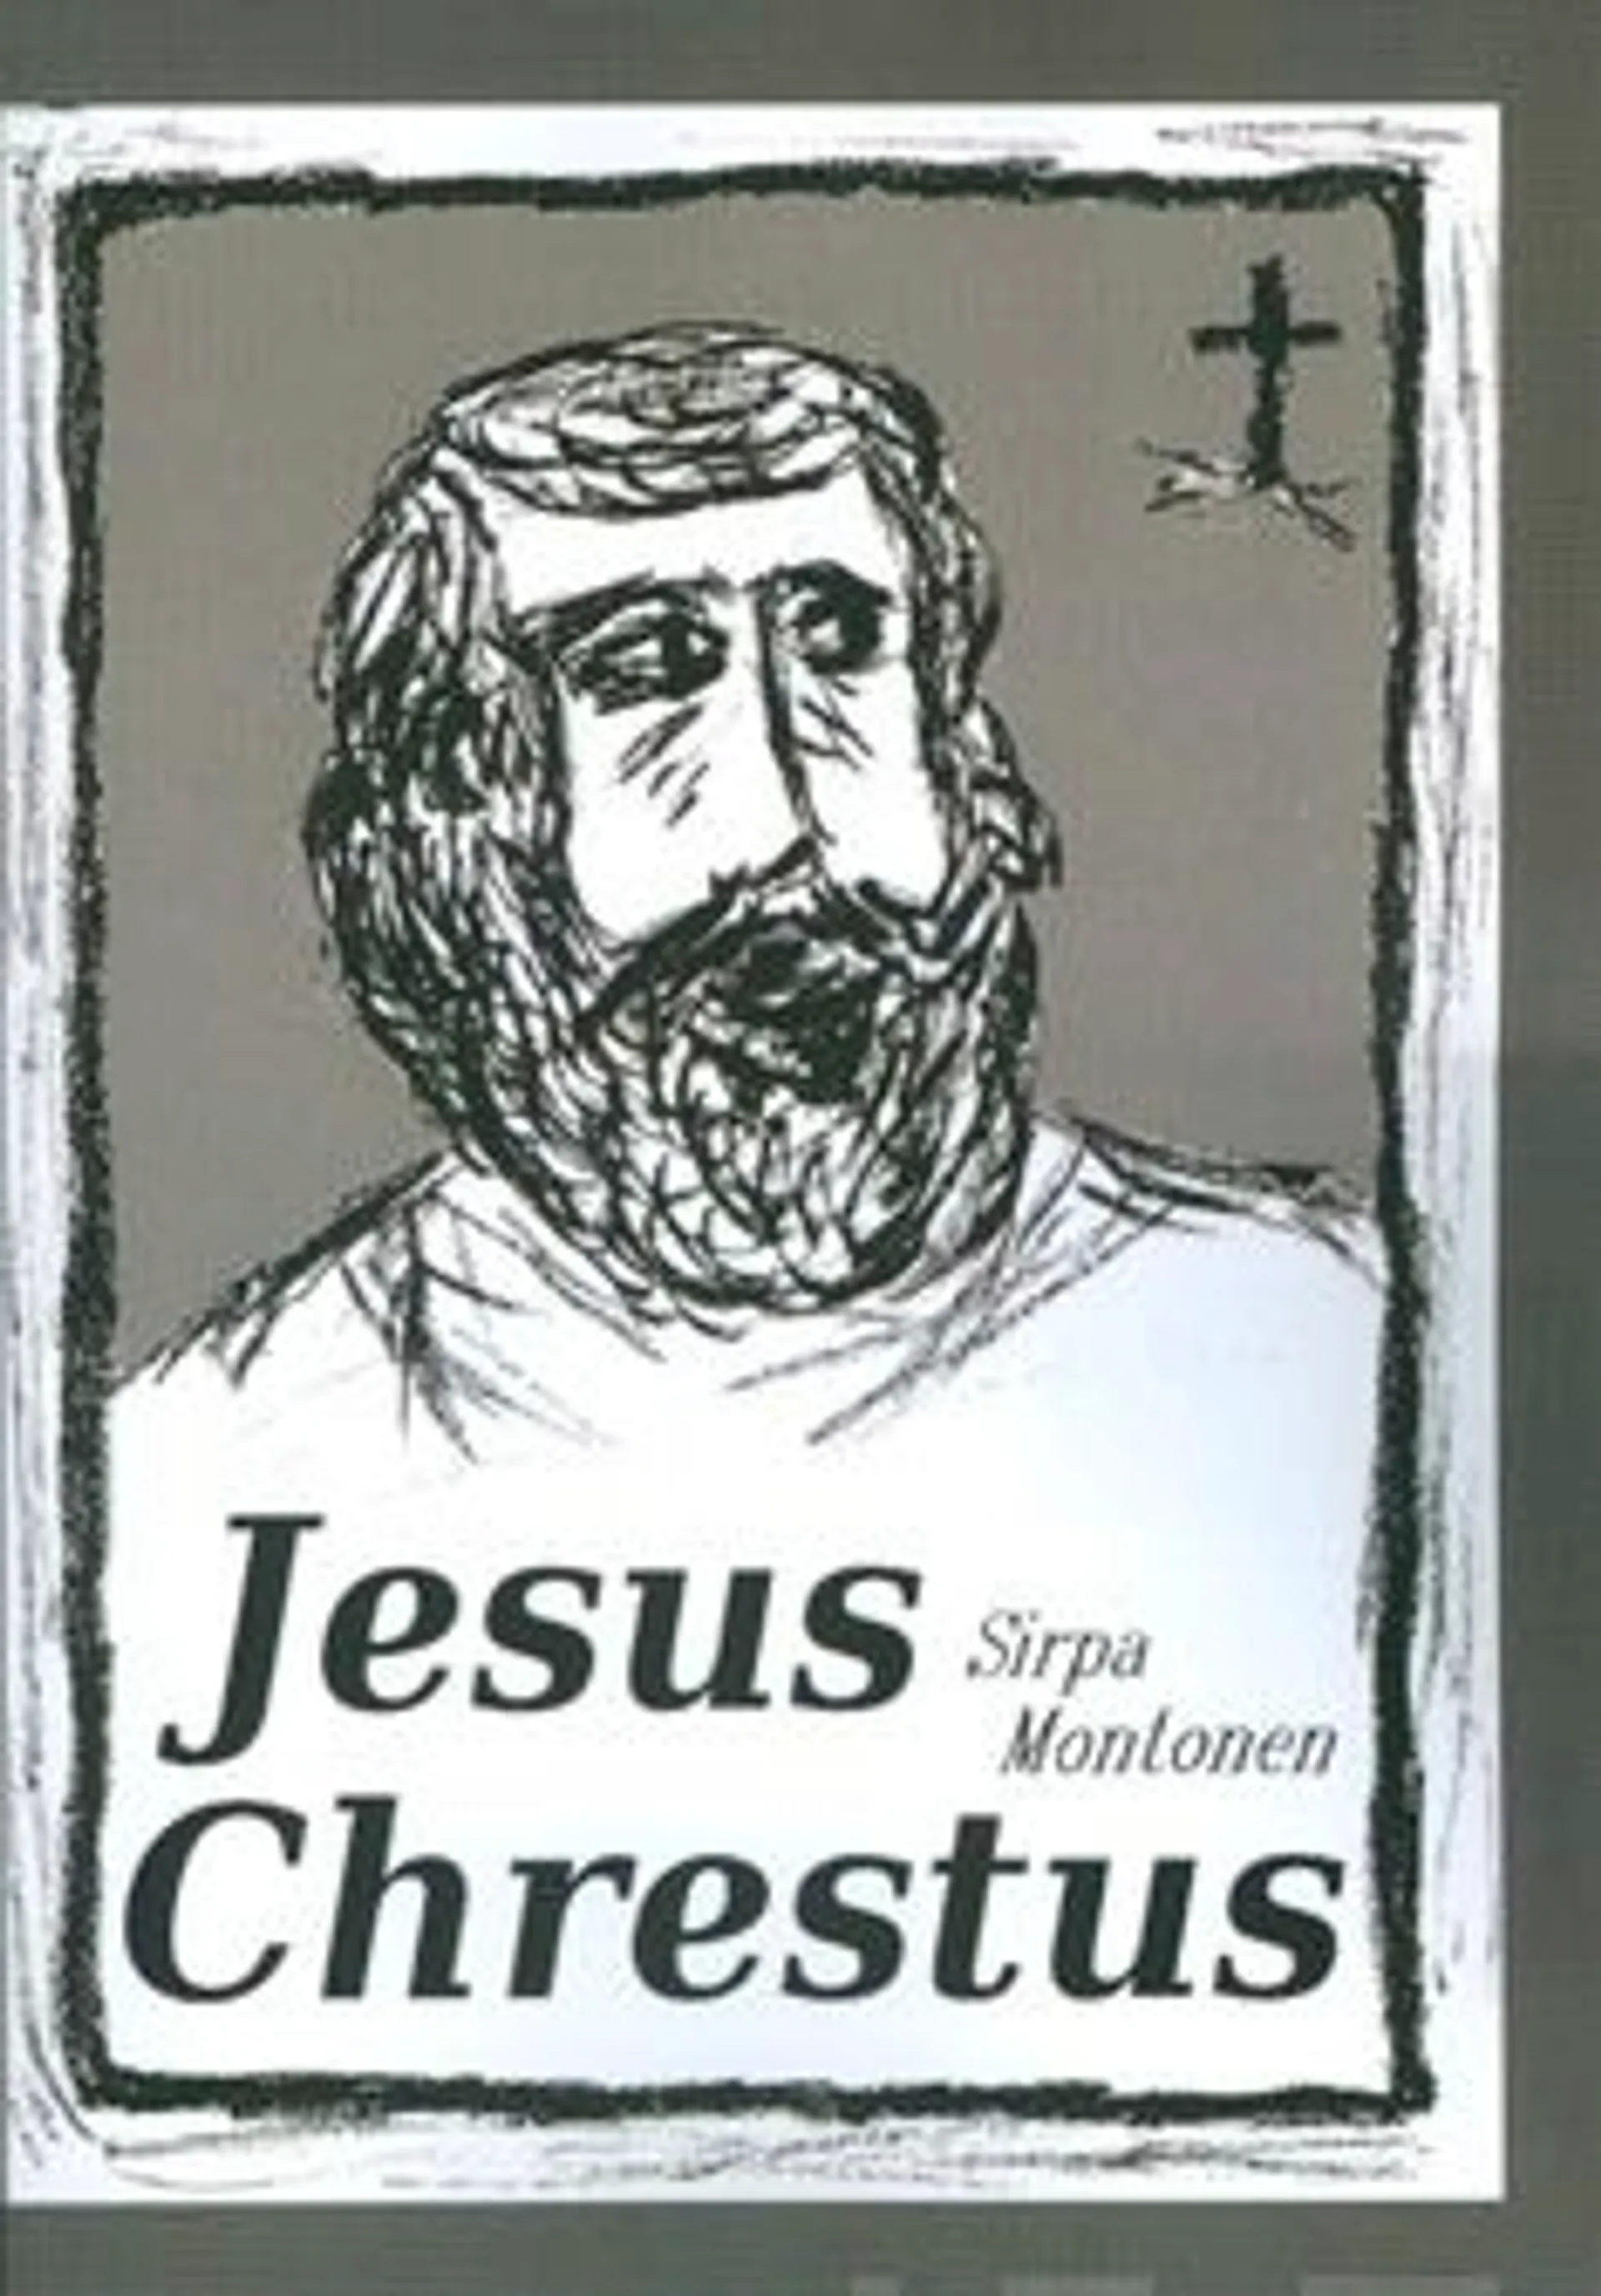 Montonen, Jesus Chrestus